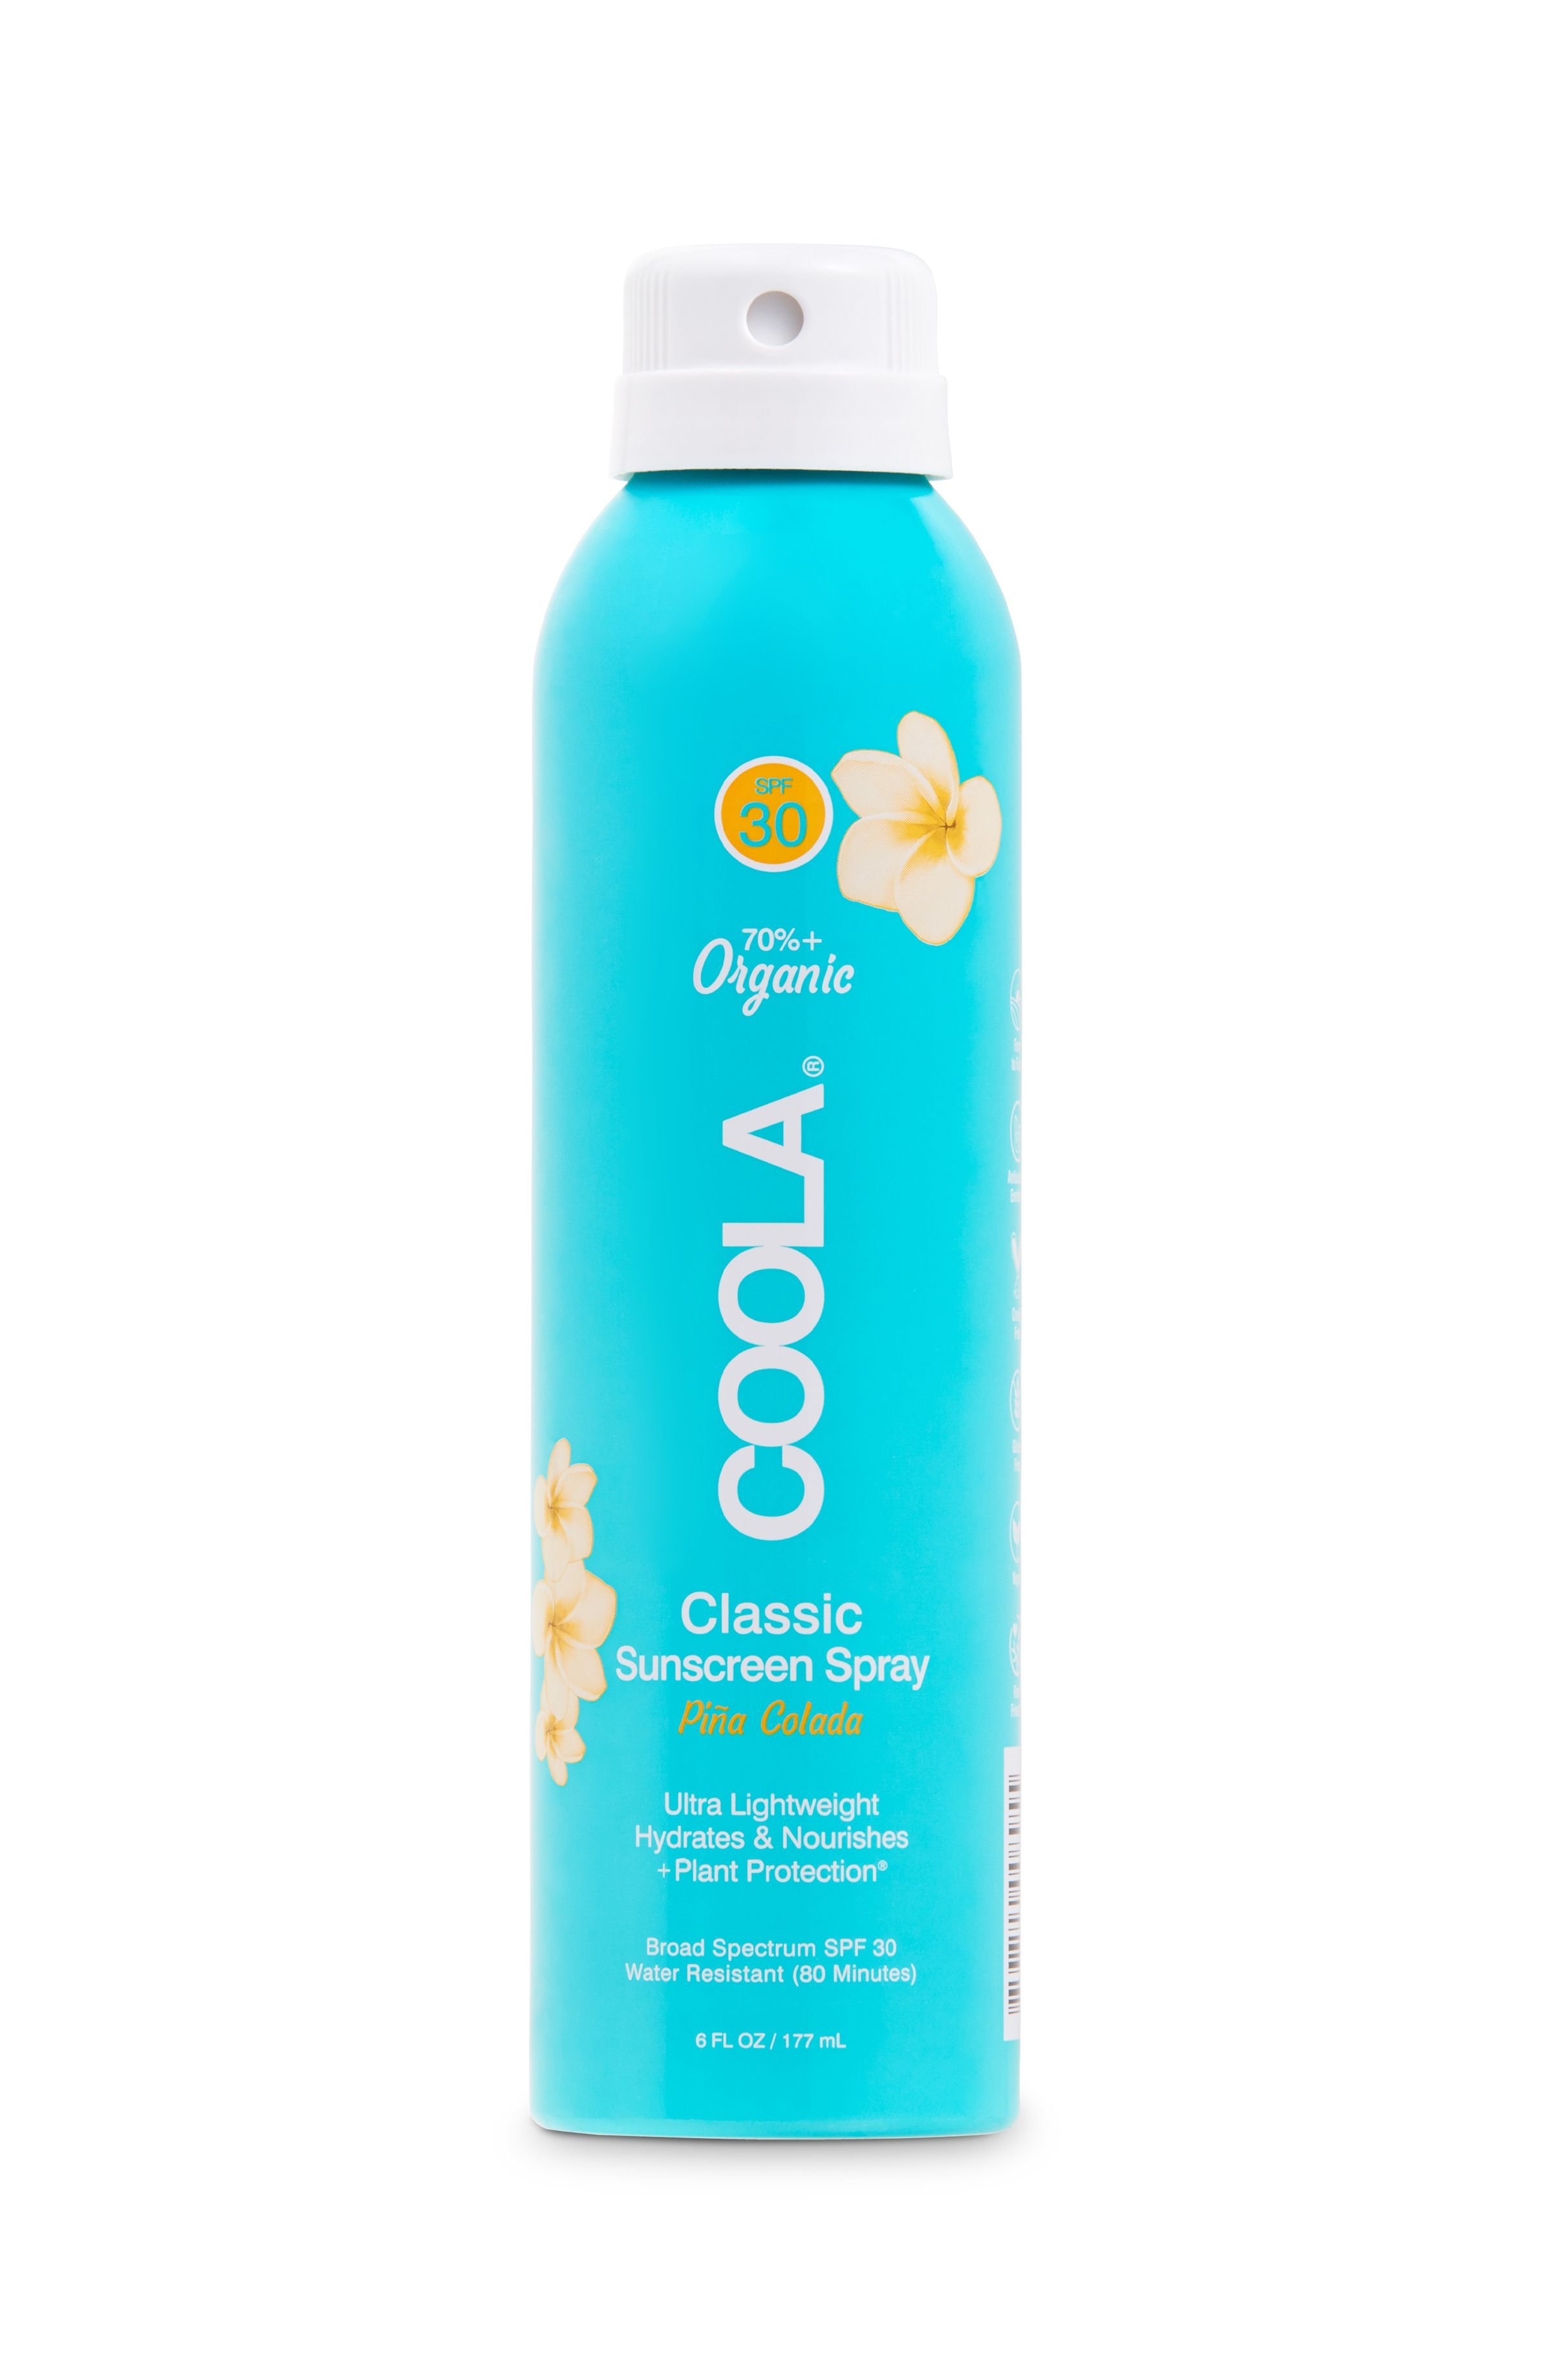 COOLA Classic Body Organic Sunscreen Spray, Piña Colada, SPF 30 - 6 fl oz